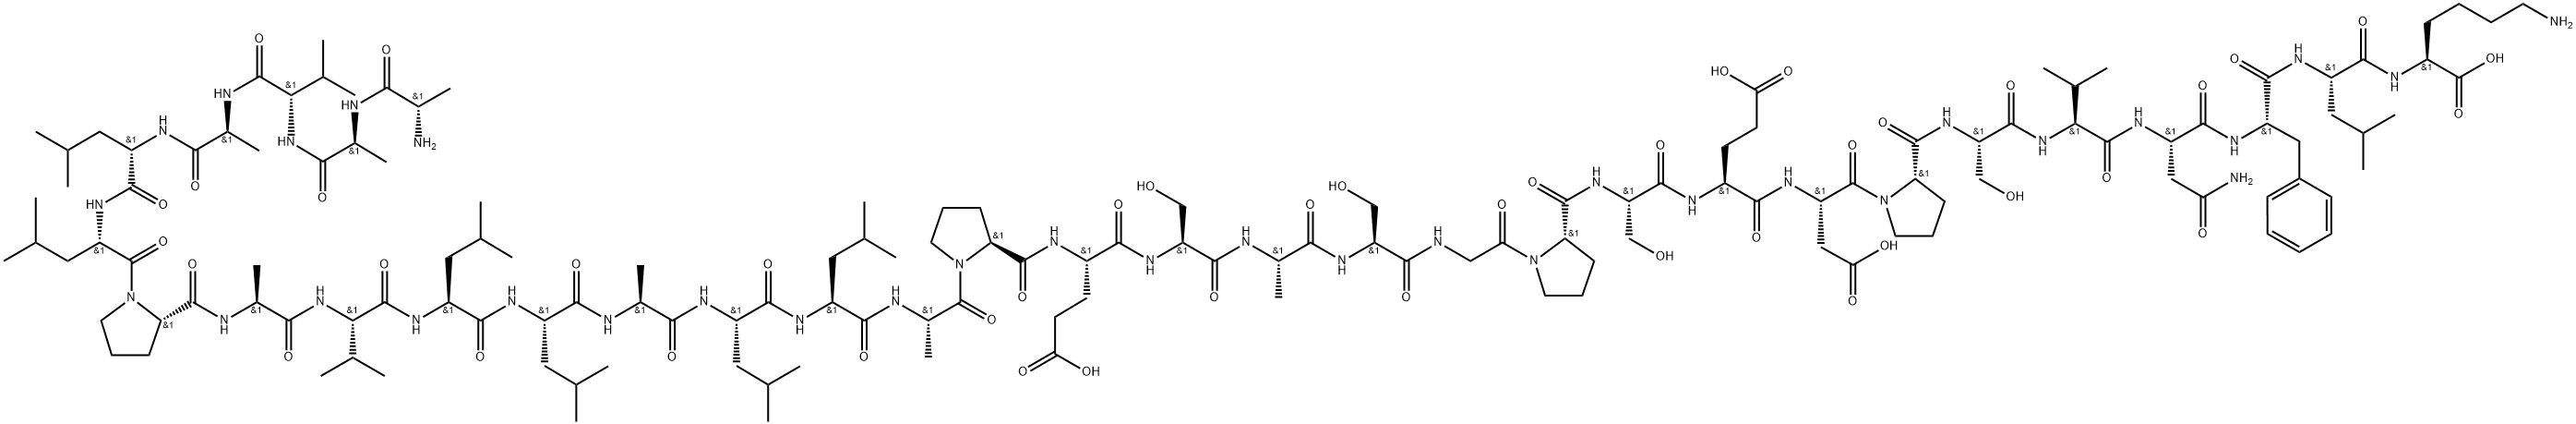 TRAF6 Peptide Structure